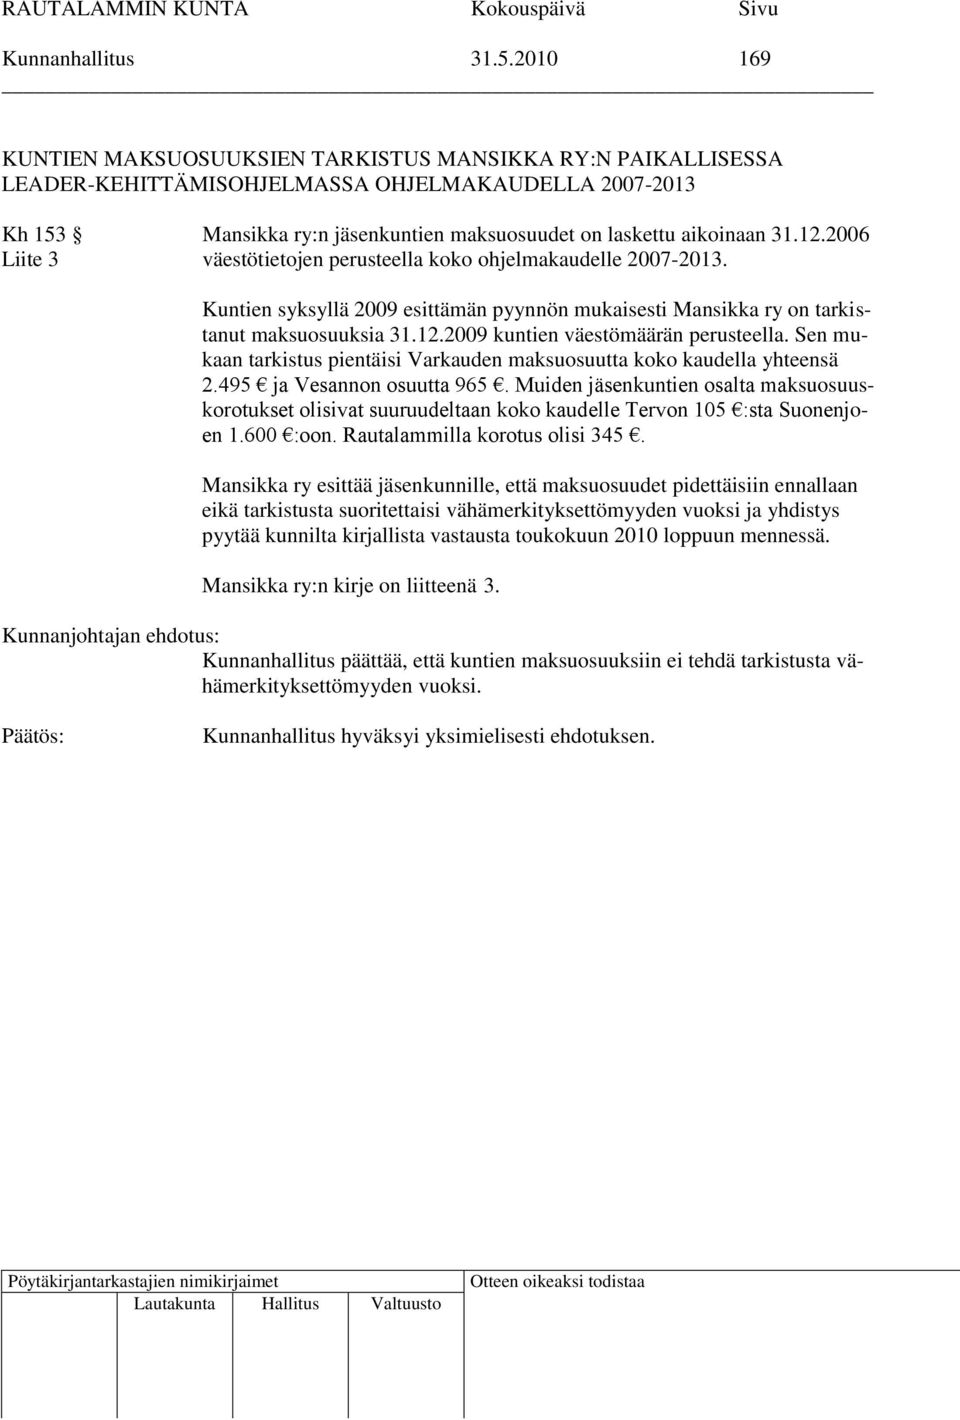 2006 Liite 3 väestötietojen perusteella koko ohjelmakaudelle 2007-2013. Kuntien syksyllä 2009 esittämän pyynnön mukaisesti Mansikka ry on tarkistanut maksuosuuksia 31.12.